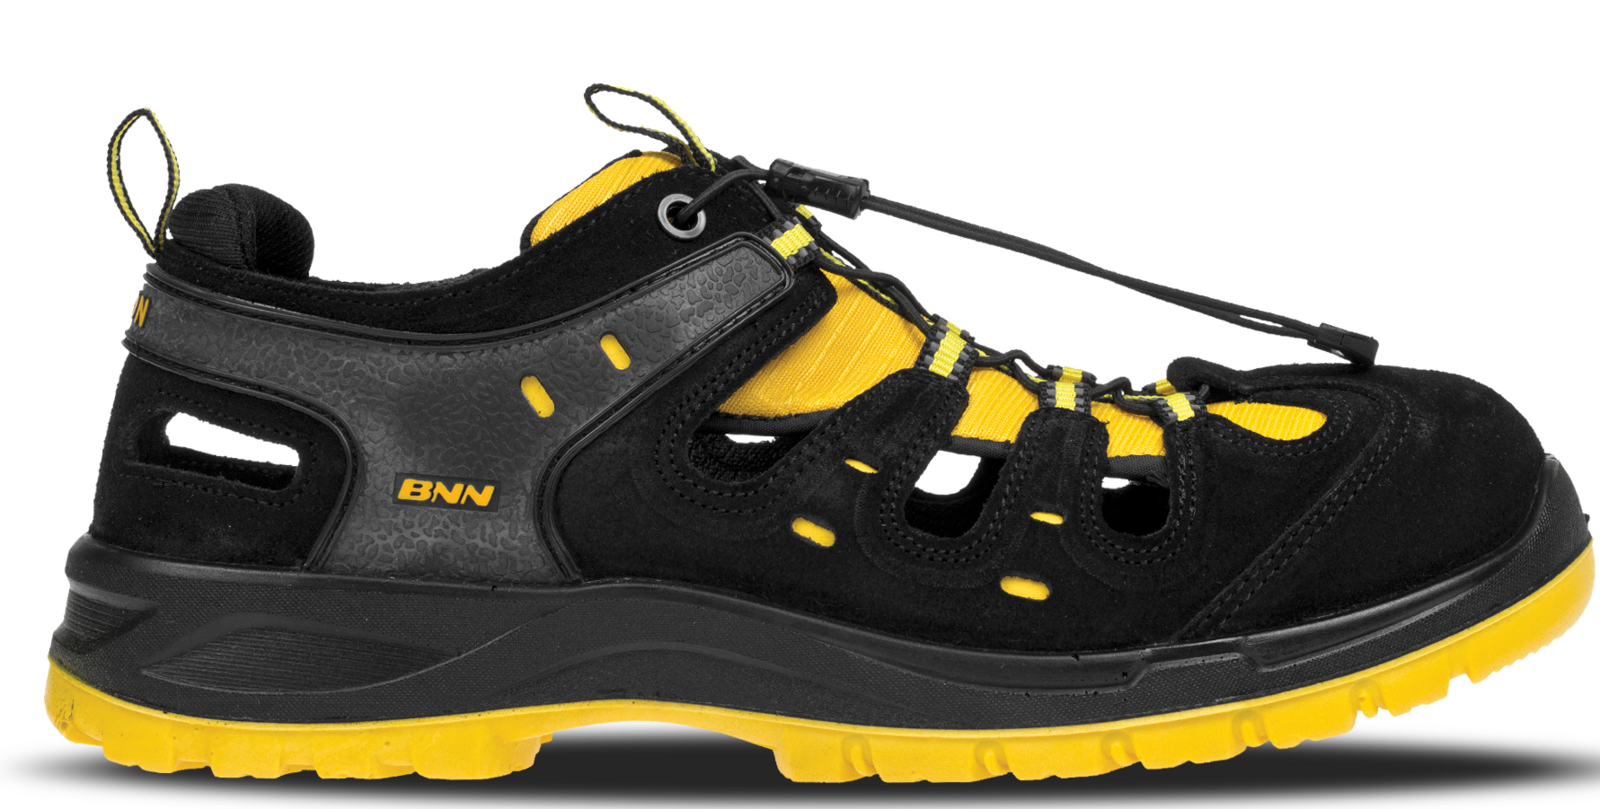 Bezpečnostné sandále Bombis lite NM S1 - veľkosť: 44, farba: žltá